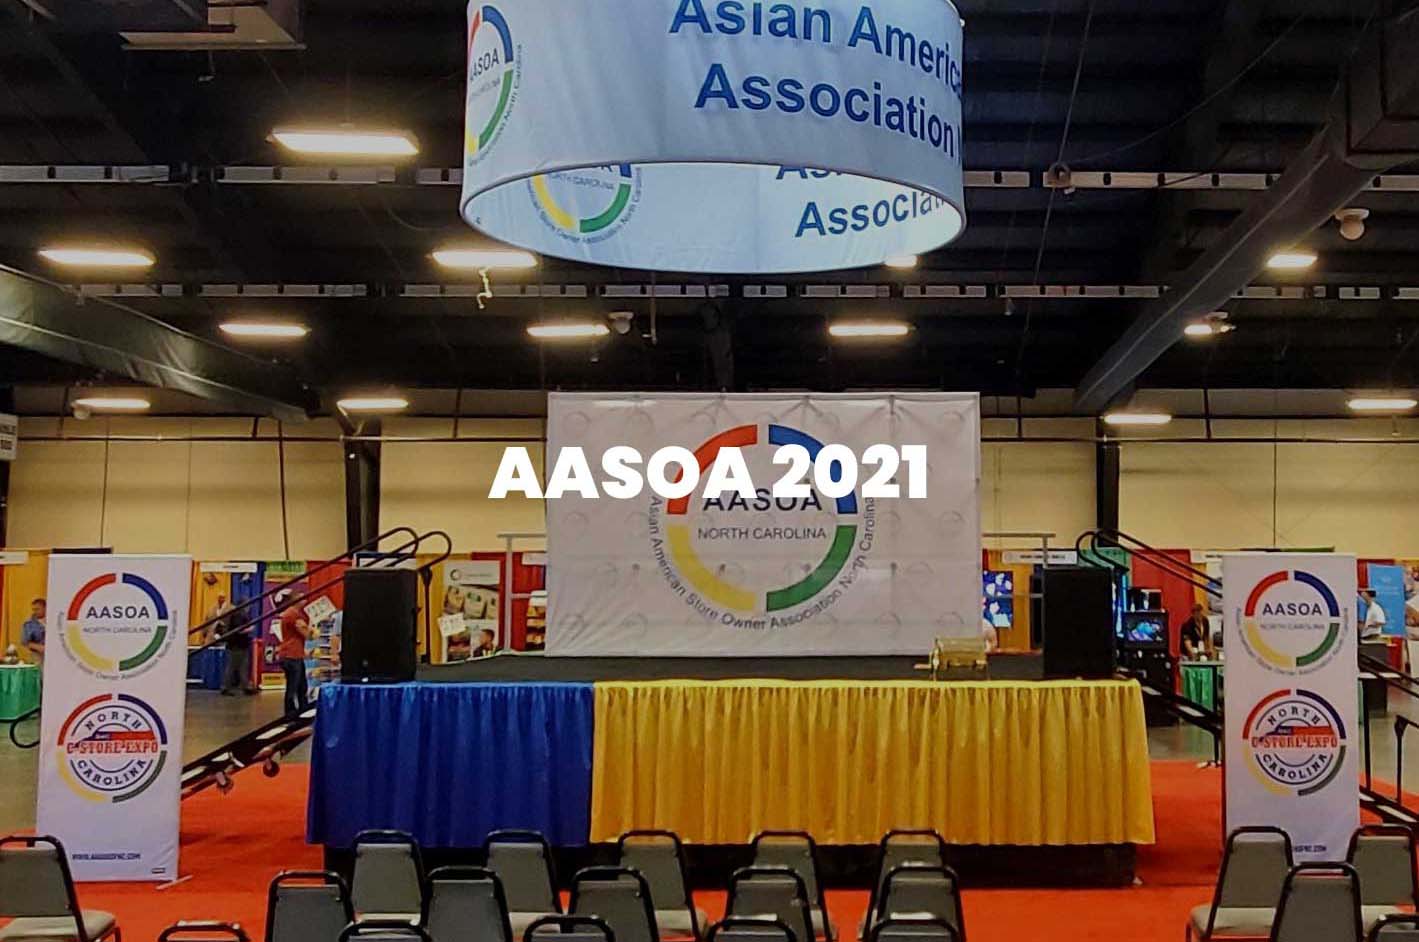 AASOA 2021